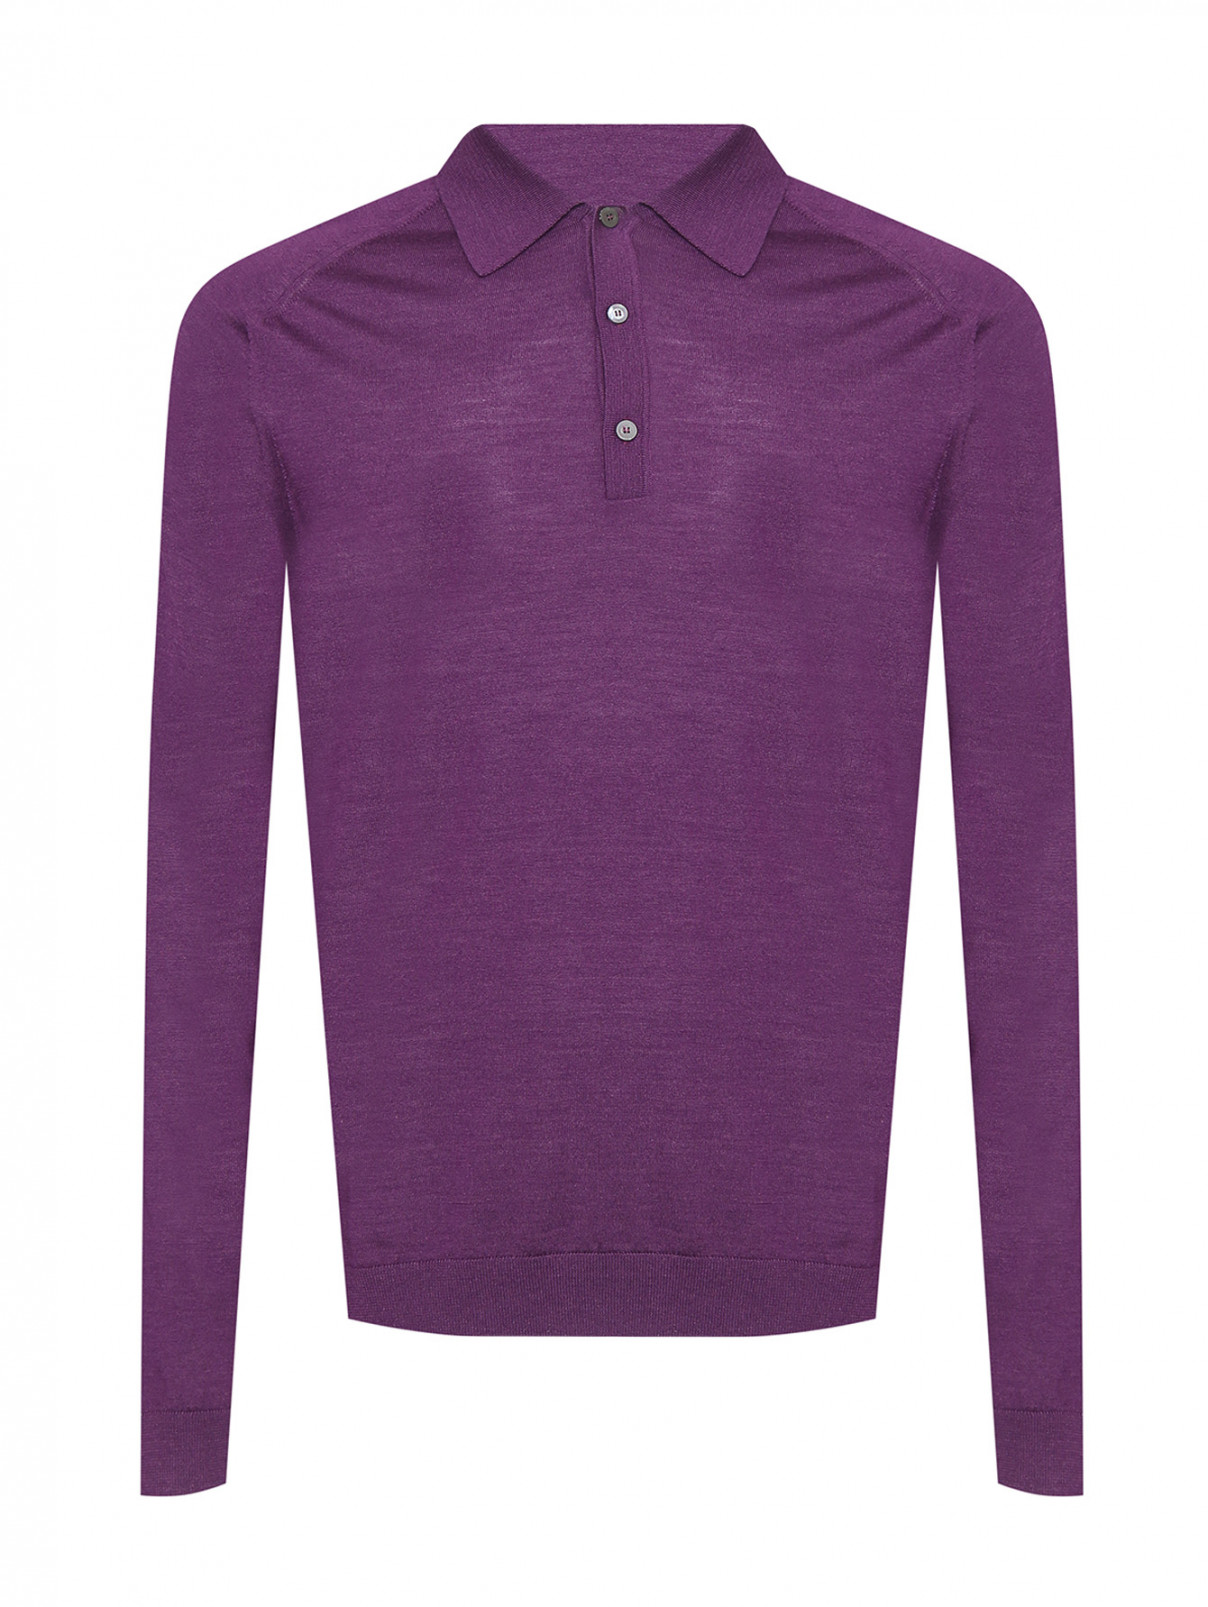 Джемпер из шерсти и шелка Piacenza Cashmere  –  Общий вид  – Цвет:  Фиолетовый